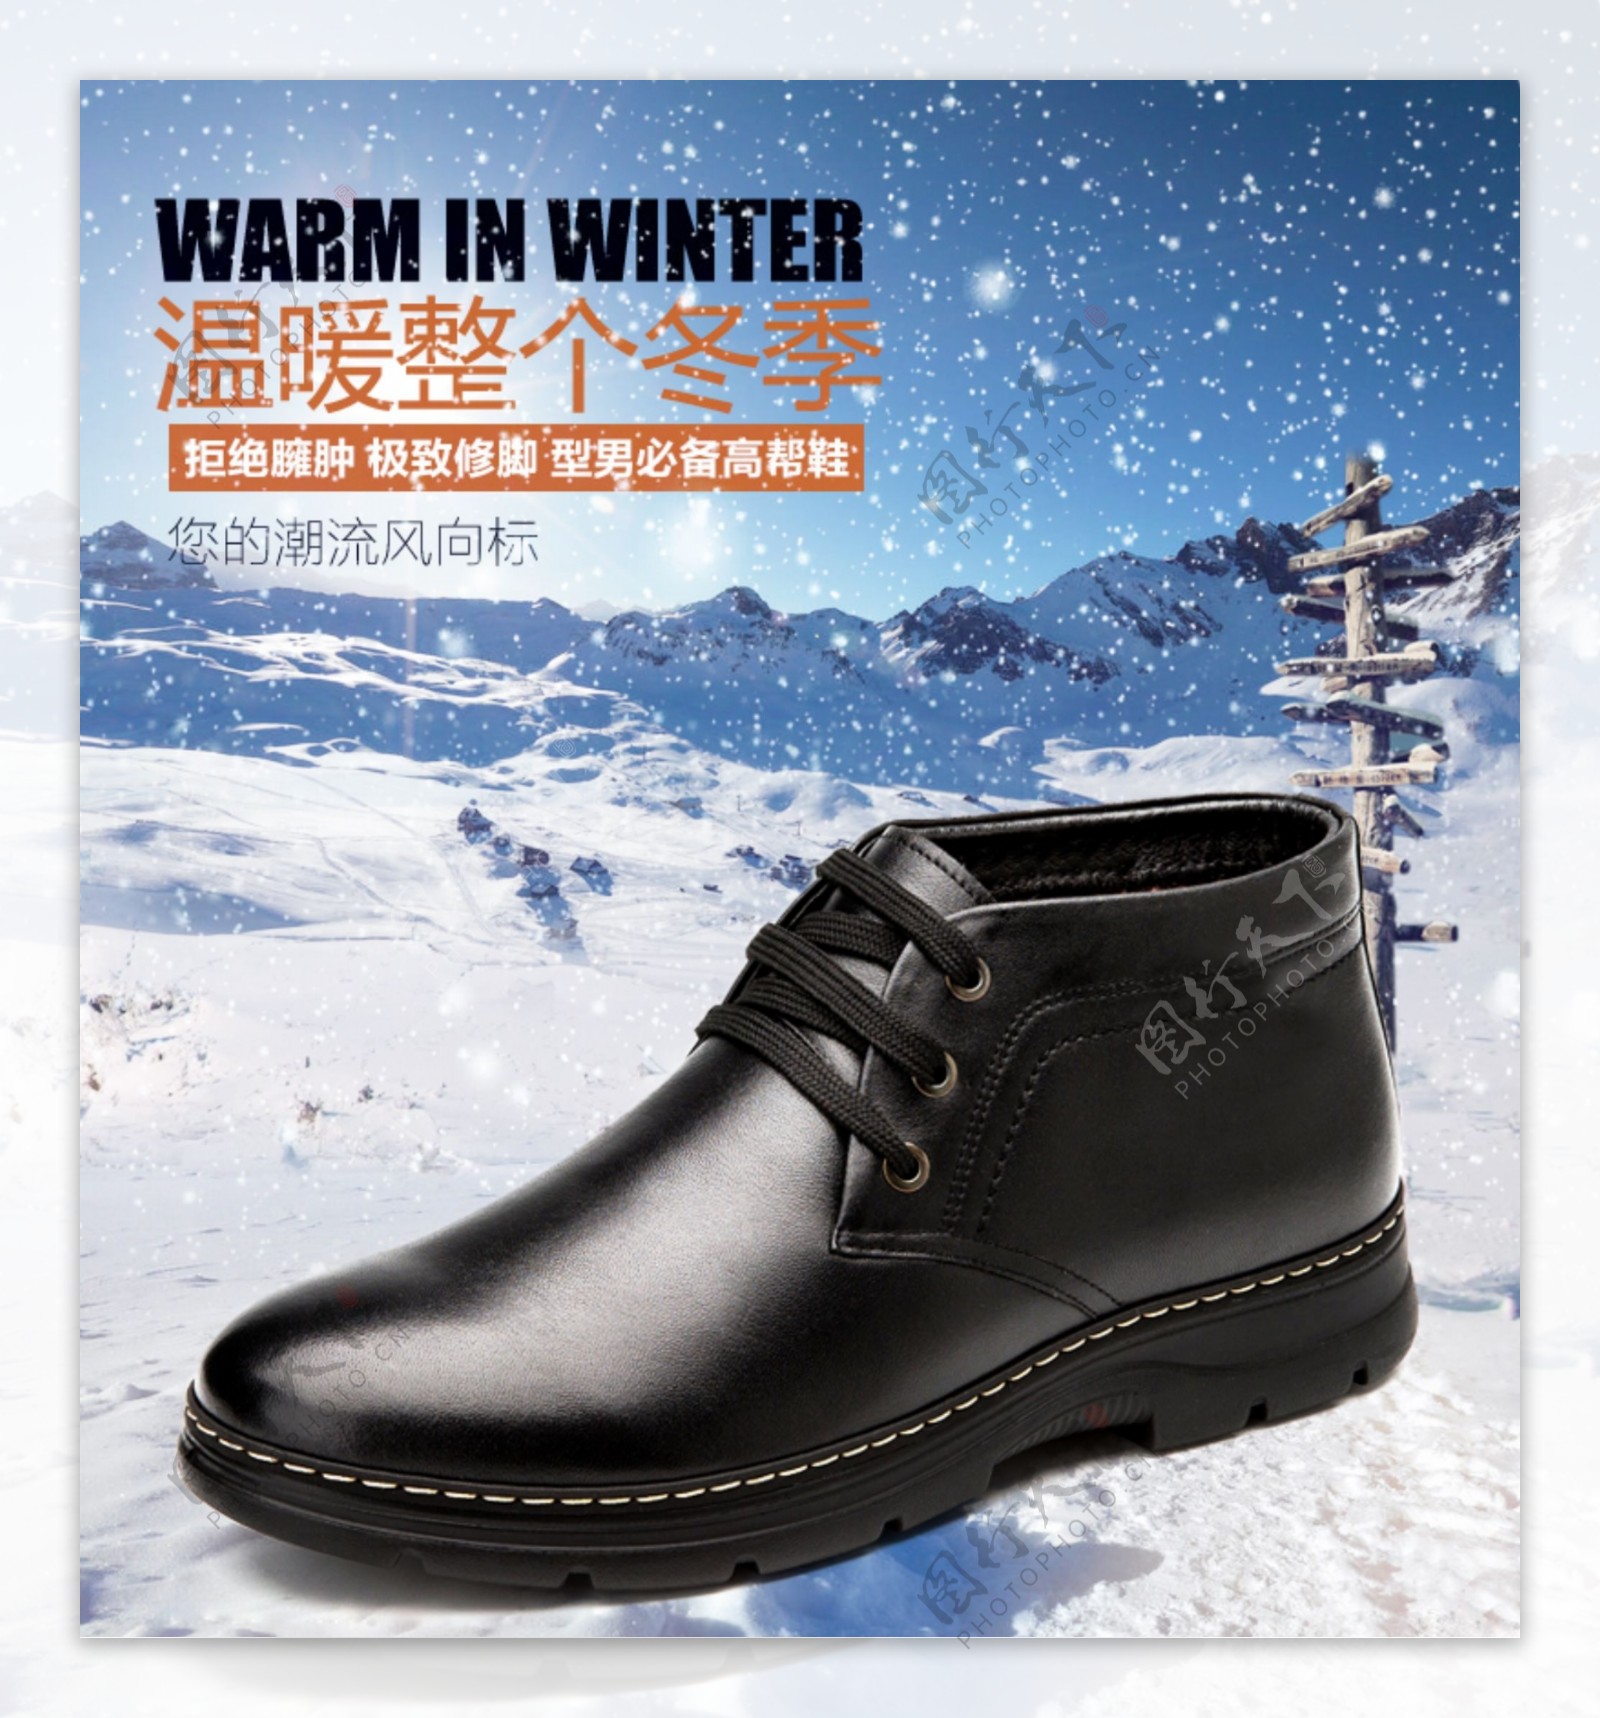 时尚冬季保暖男鞋